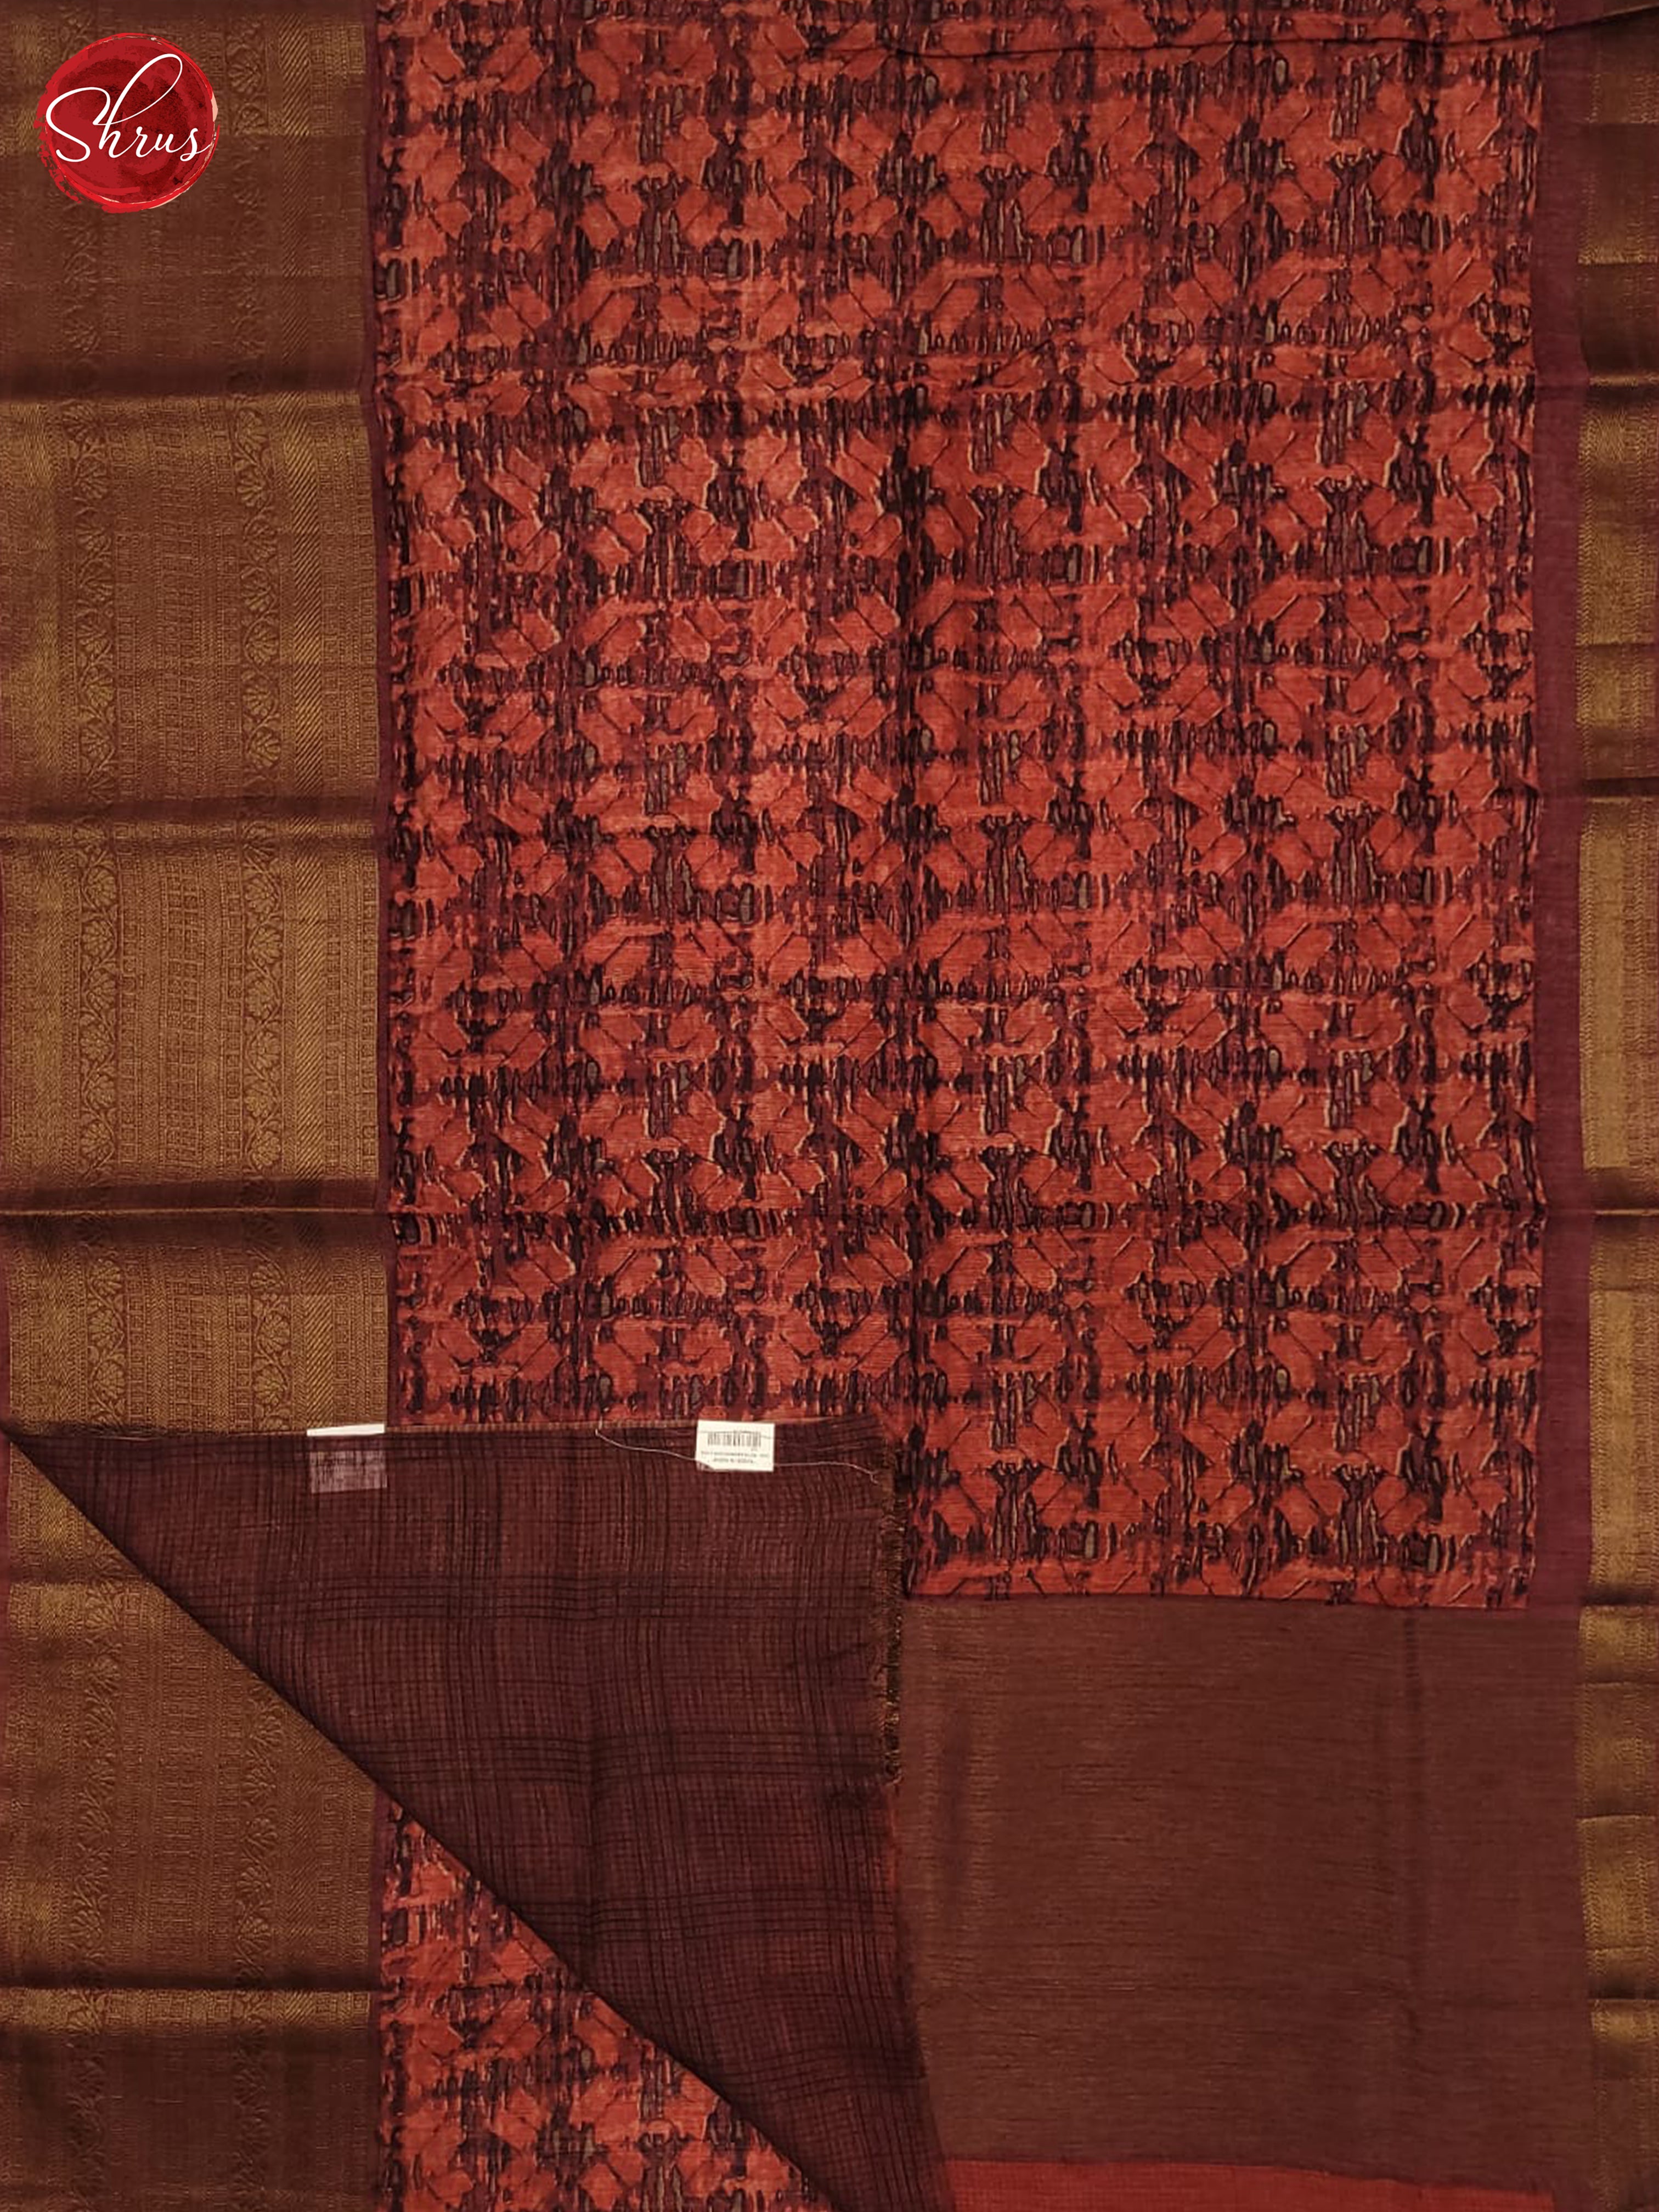 Majenta Pink(Single Tone) - Linen print Saree - Shop on ShrusEternity.com